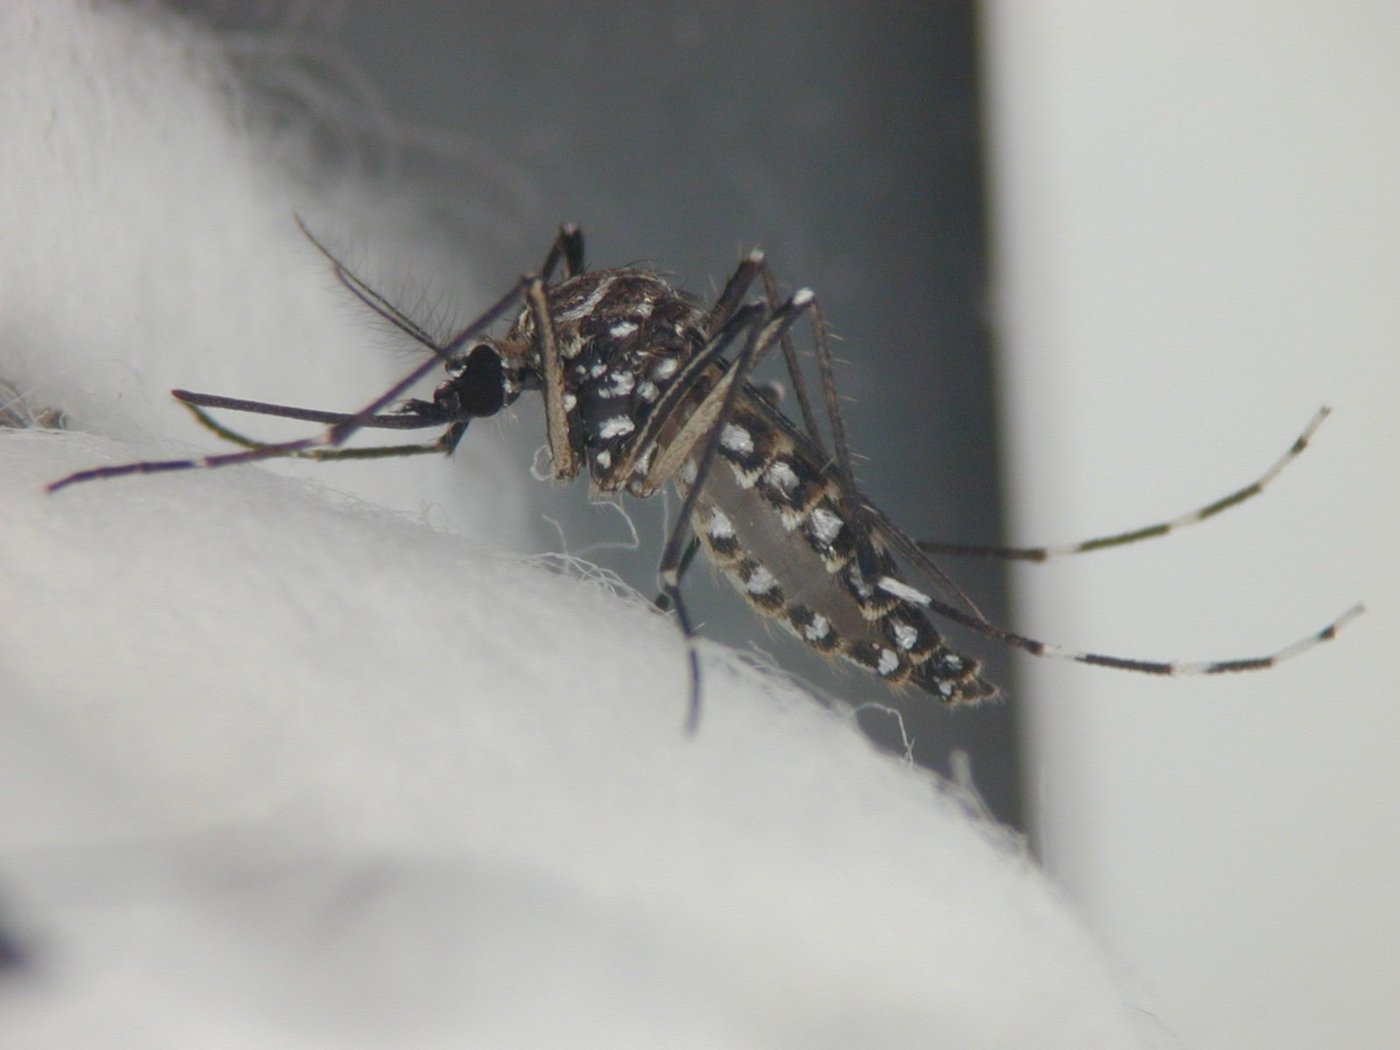 Eine weiß gestreifte Stechmücke (Tigermücke) sitzt auf einem Wattebausch. Das Foto ist in schwarz-weiß gehalten.